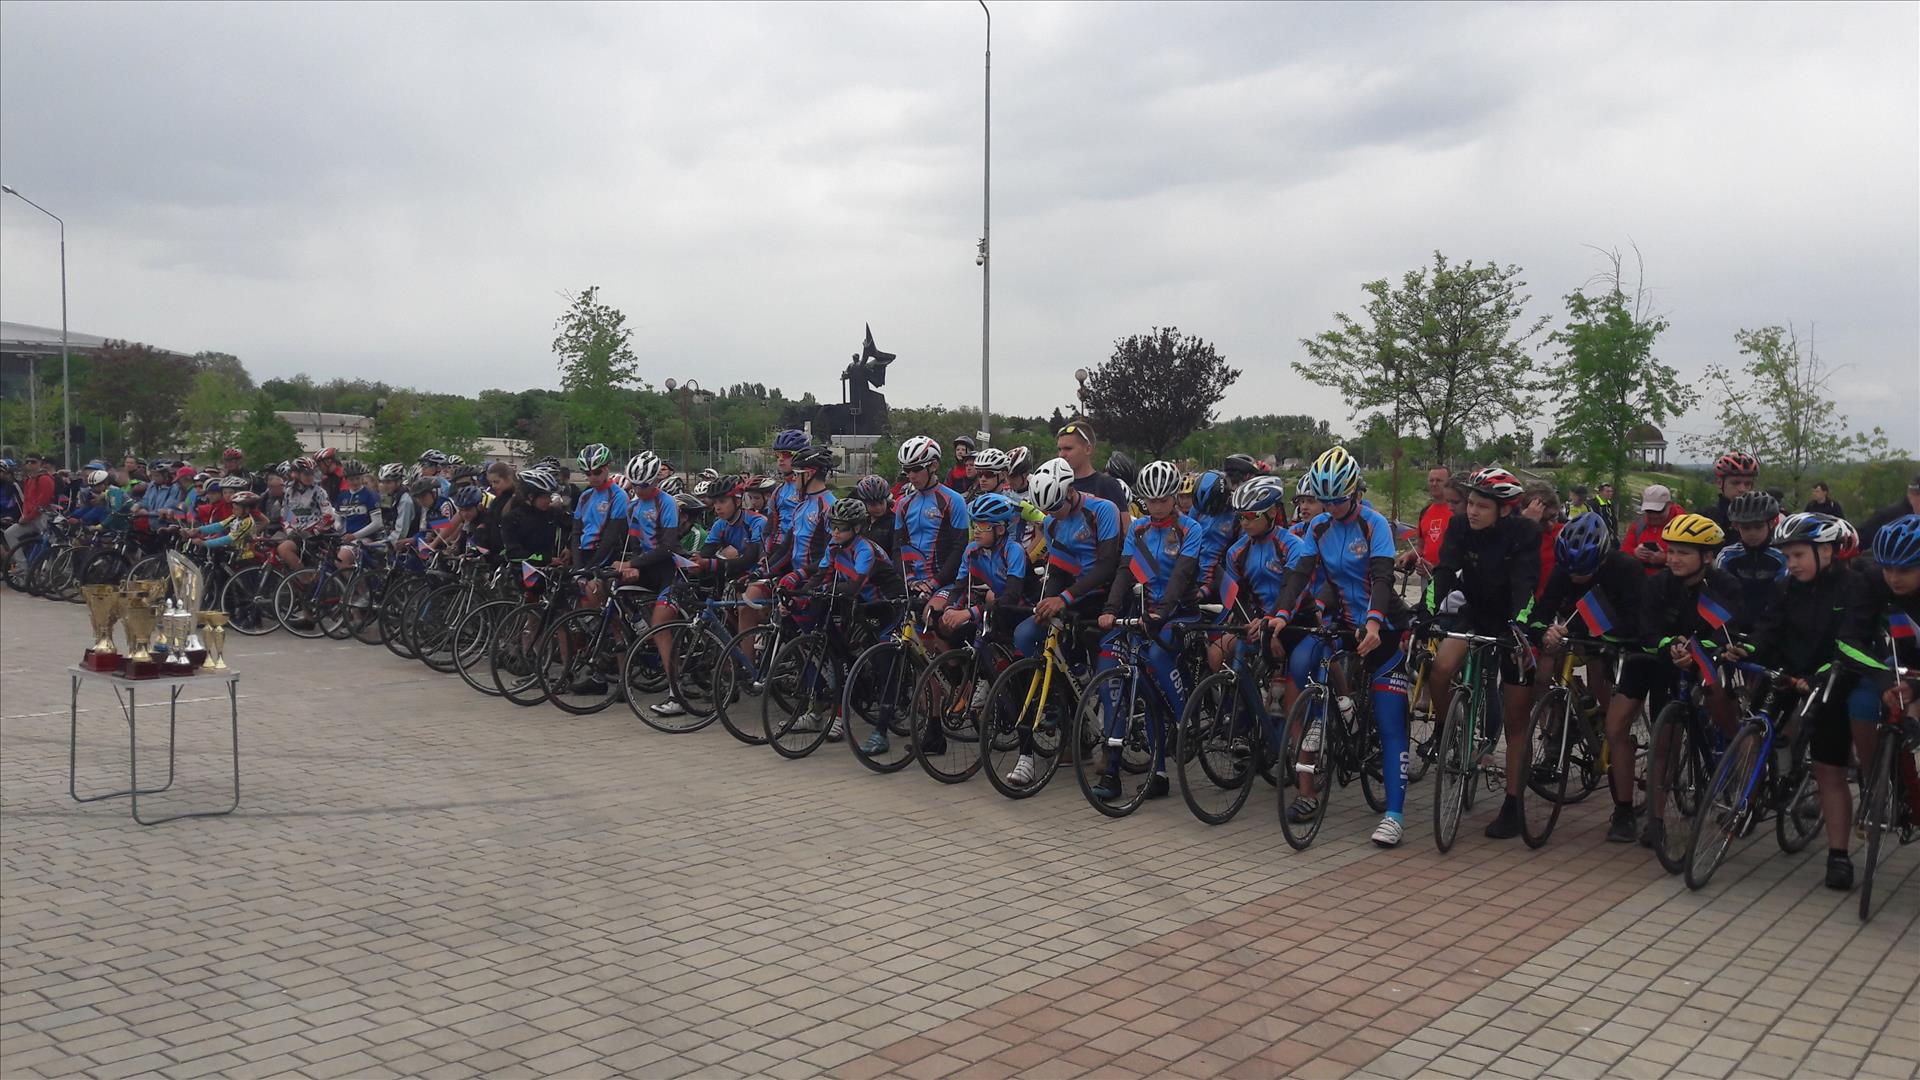 Порядка 900 велосипедистов со всего Донбасса собрались в Донецке в честь Дня Республики